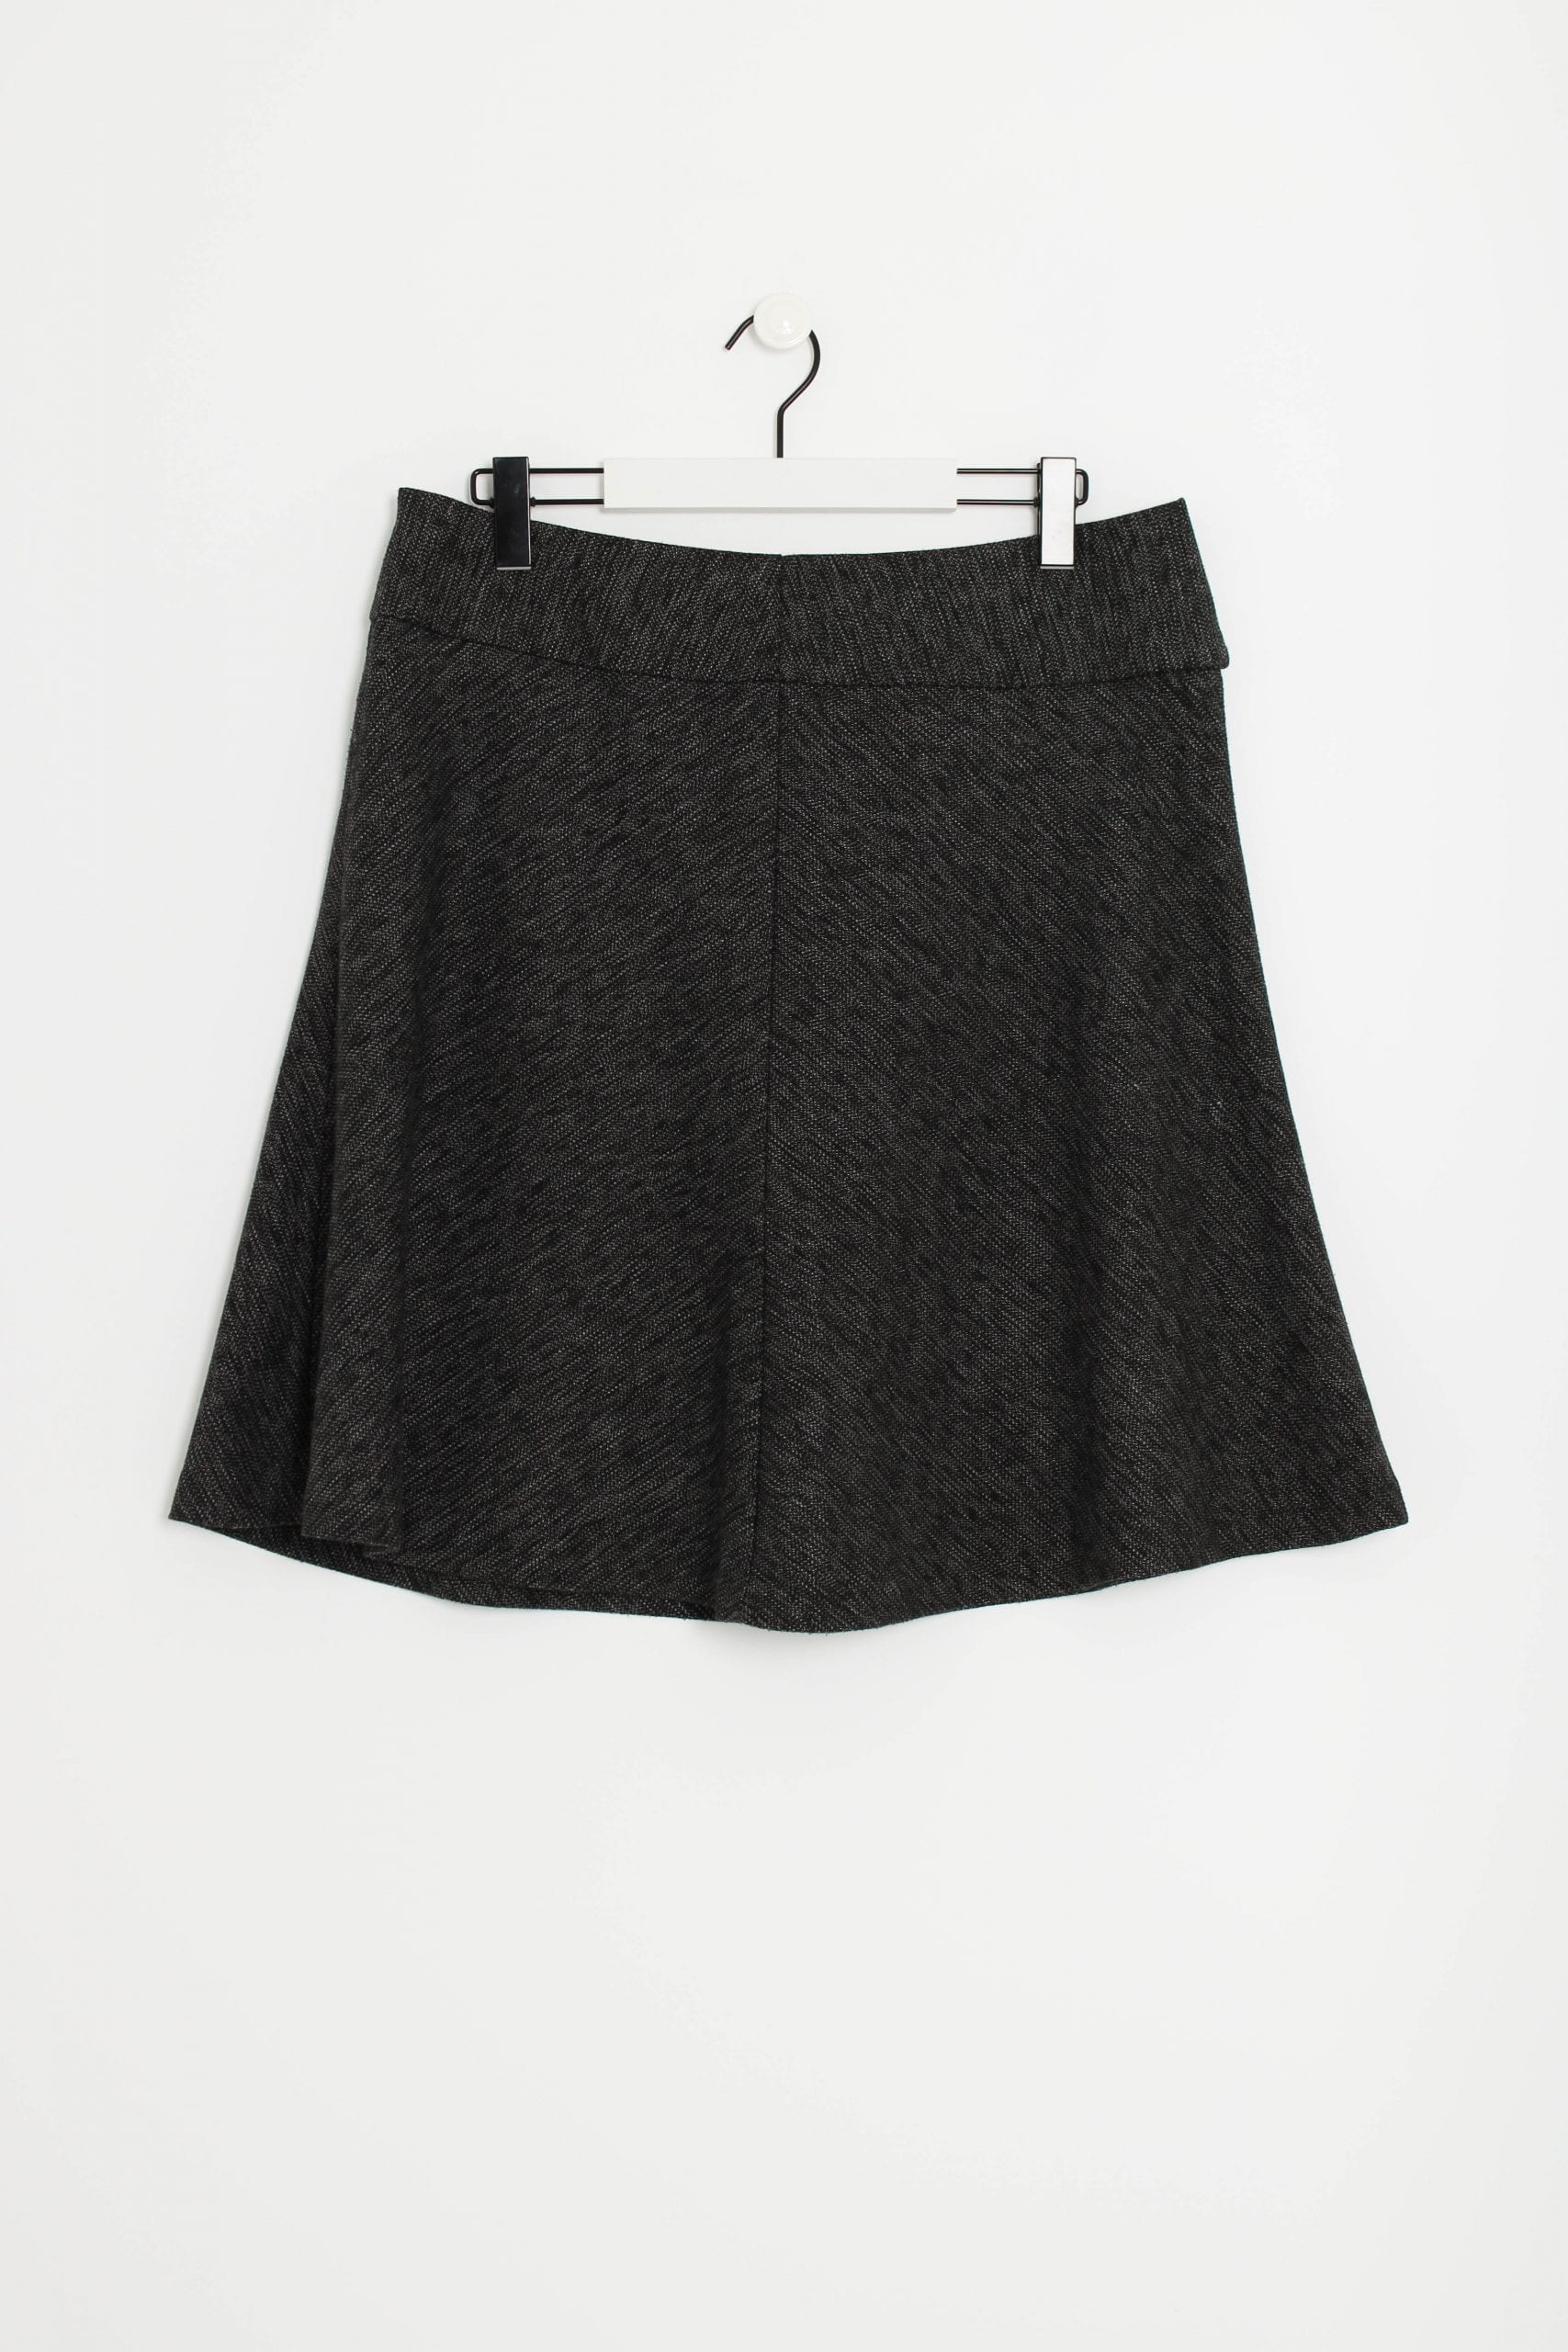 Grey pin-stripe skirt - Swapology